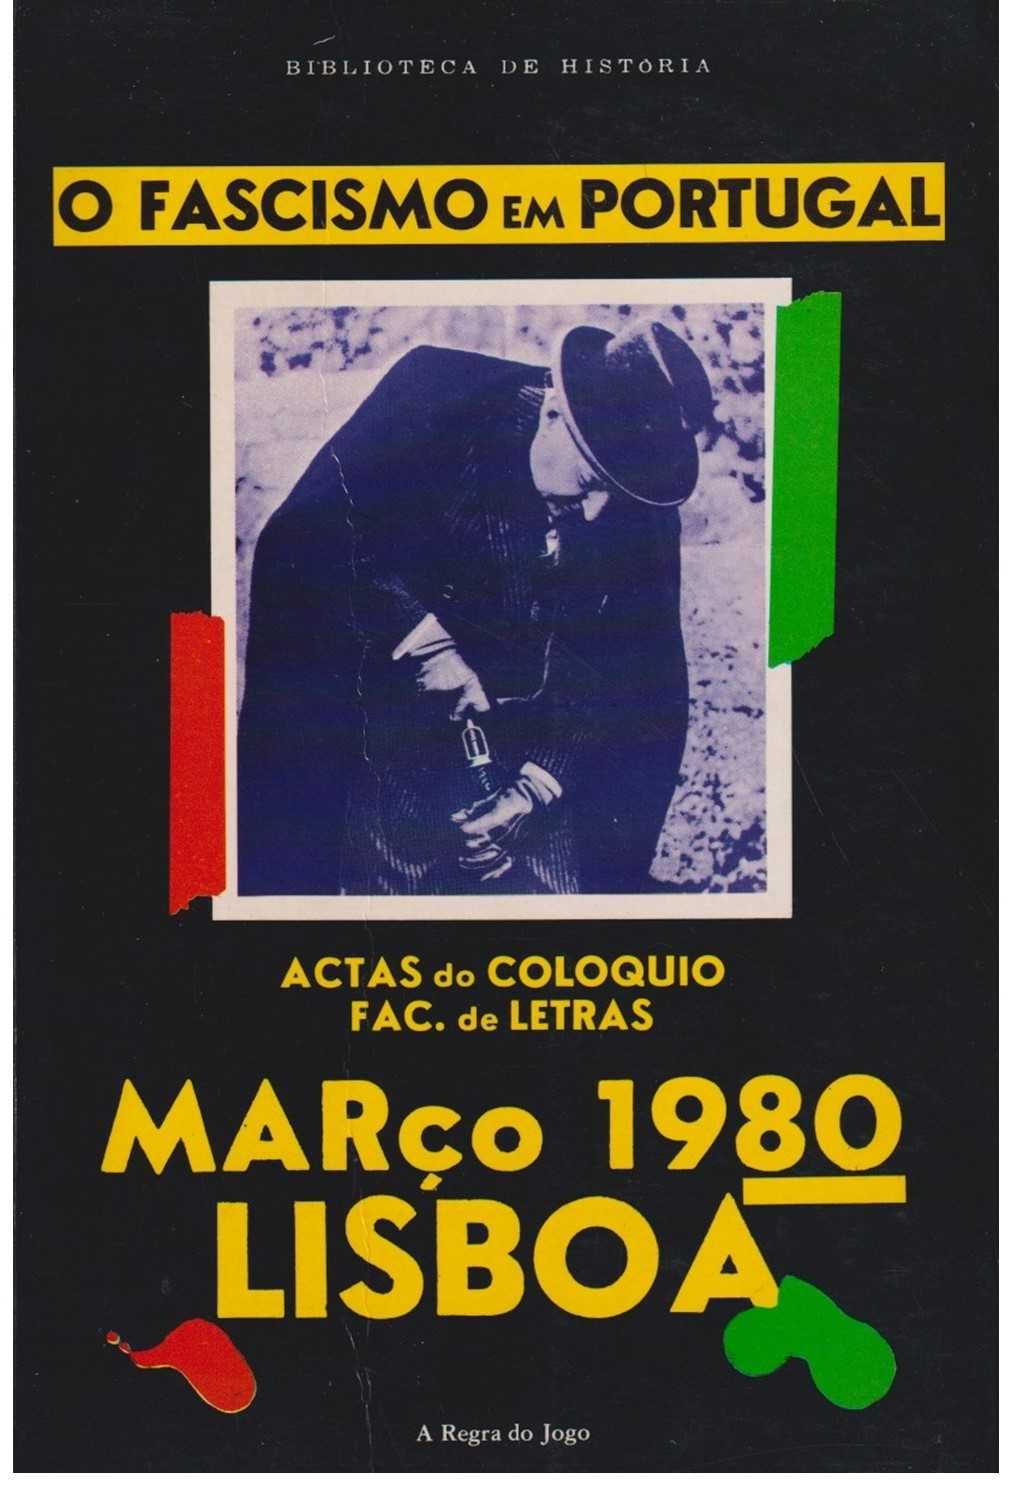 O Fascismo em Portugal: actas do colóquio - Faculdade de Letras Lisboa